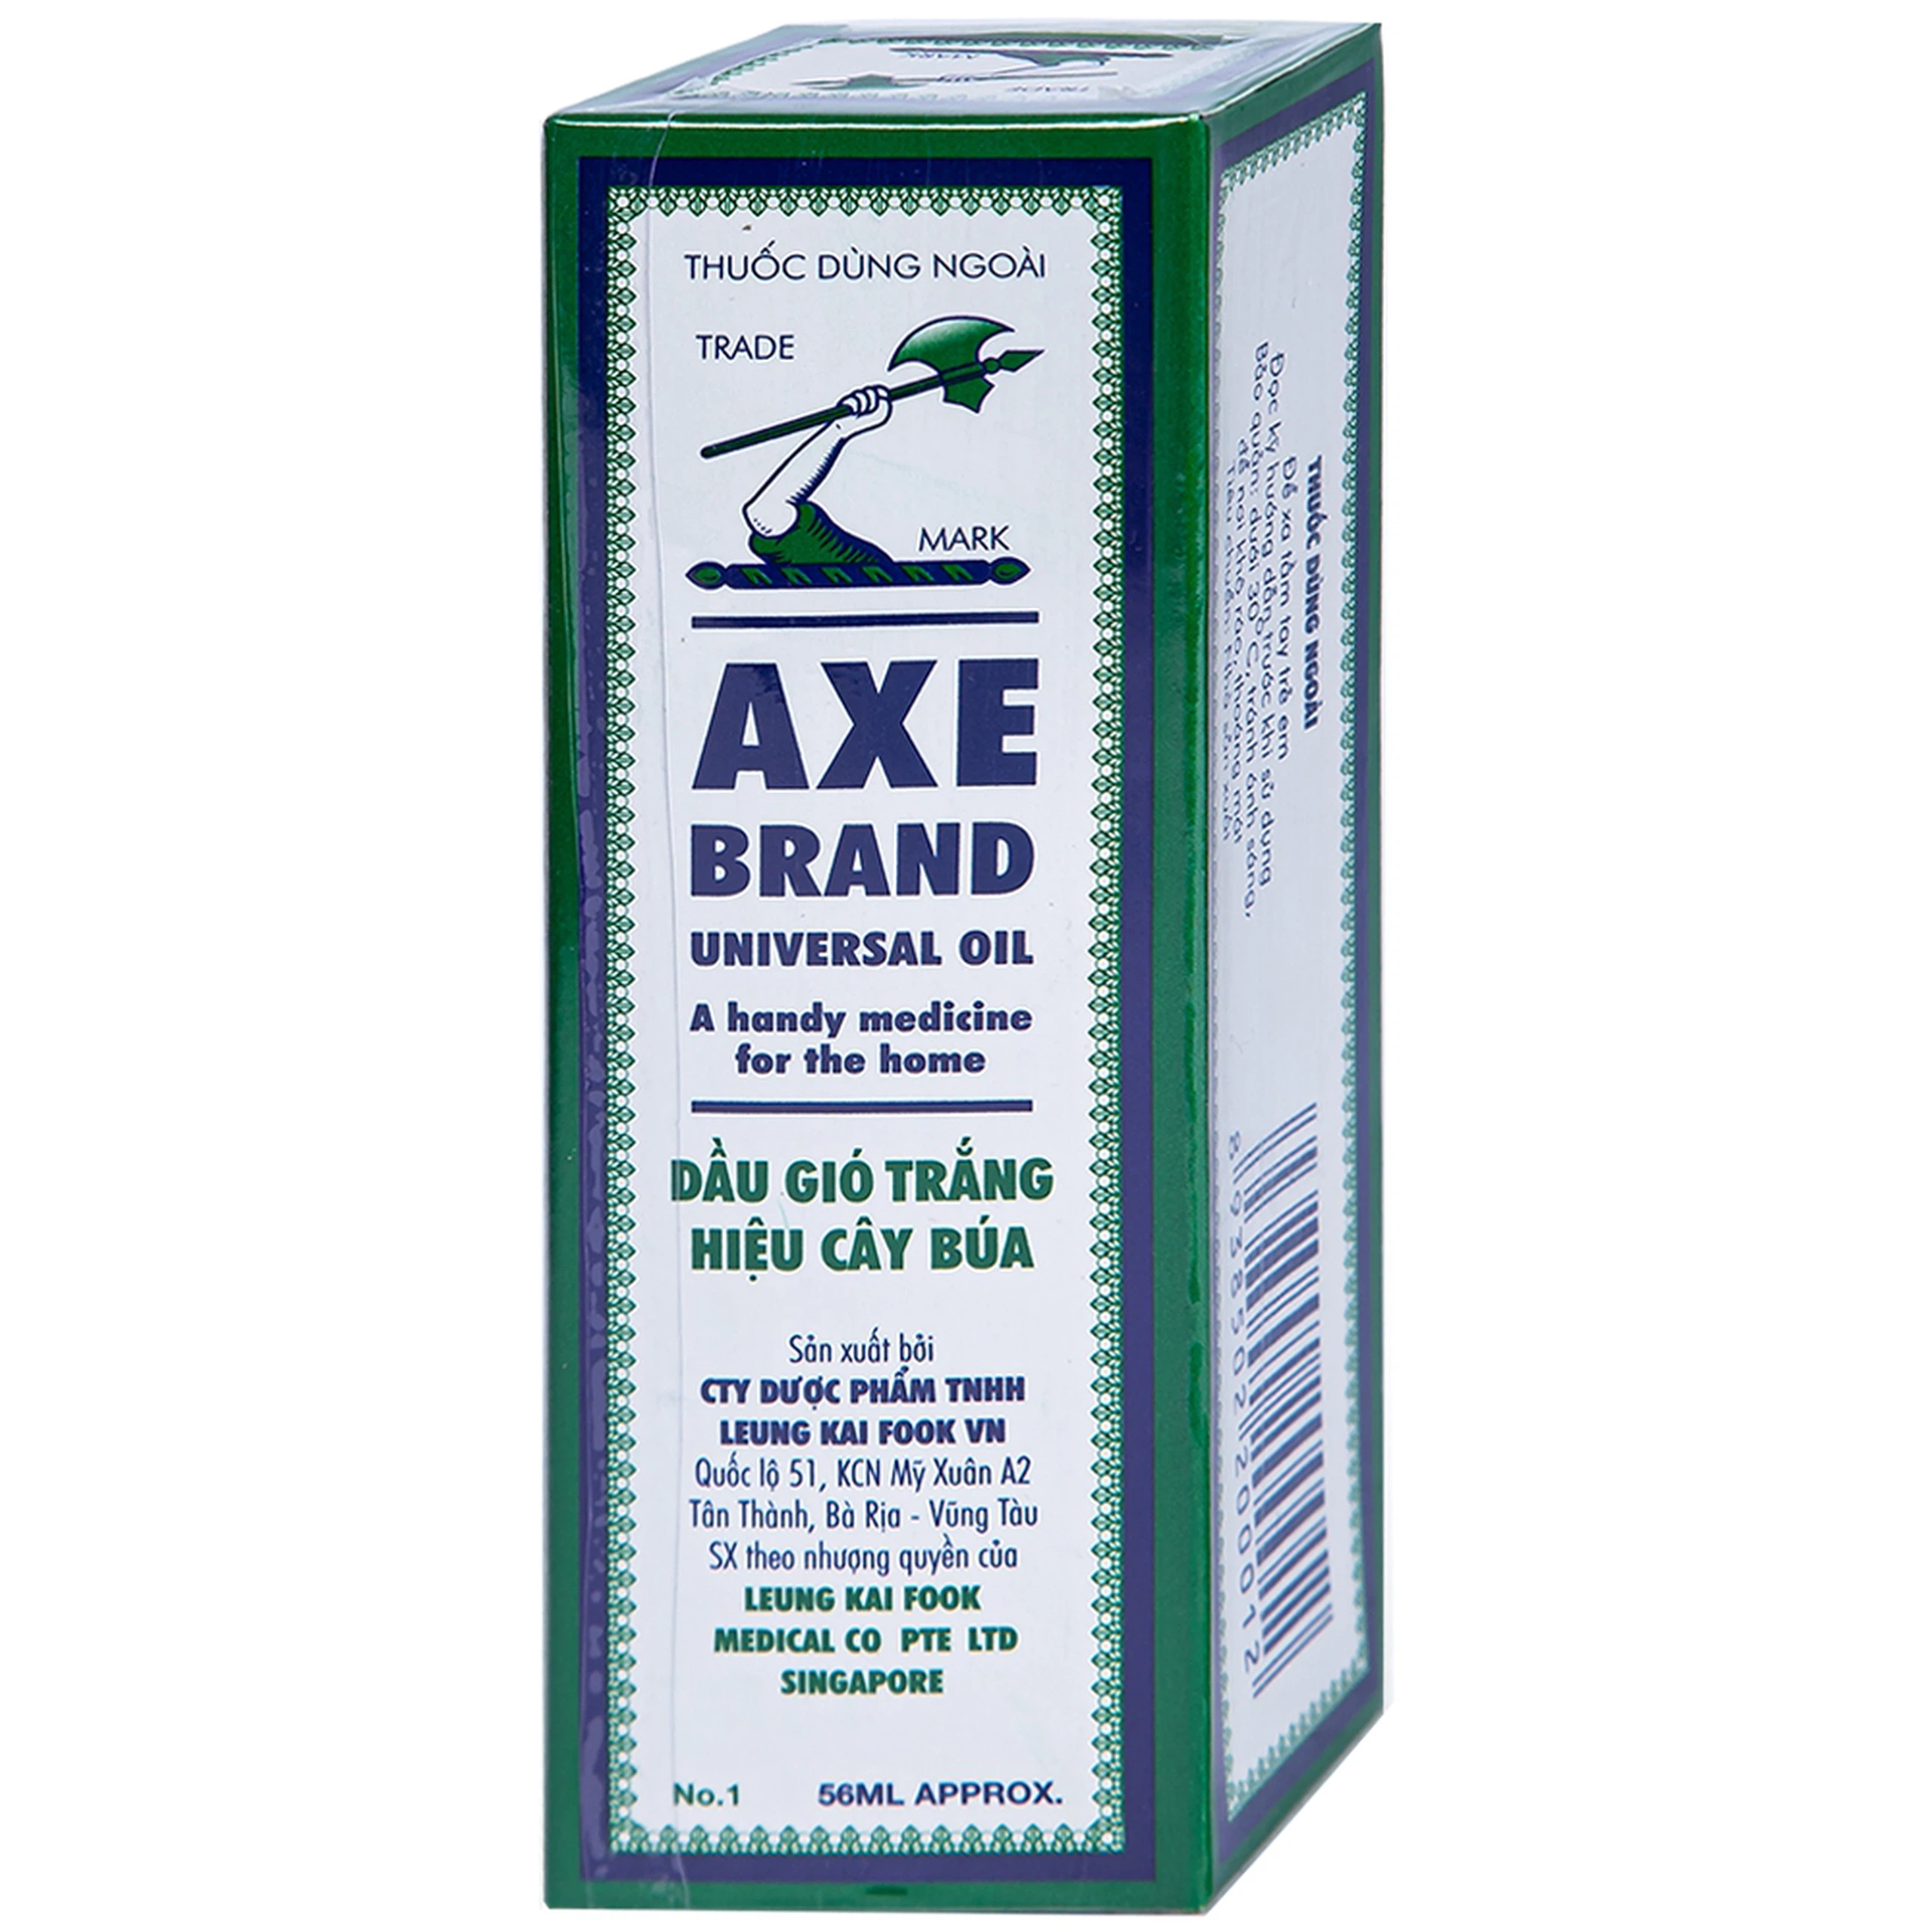 Dầu gió trắng Cây Búa Axe Brand Universal Oil giảm các triệu chứng cảm lạnh, ho khan (56ml)